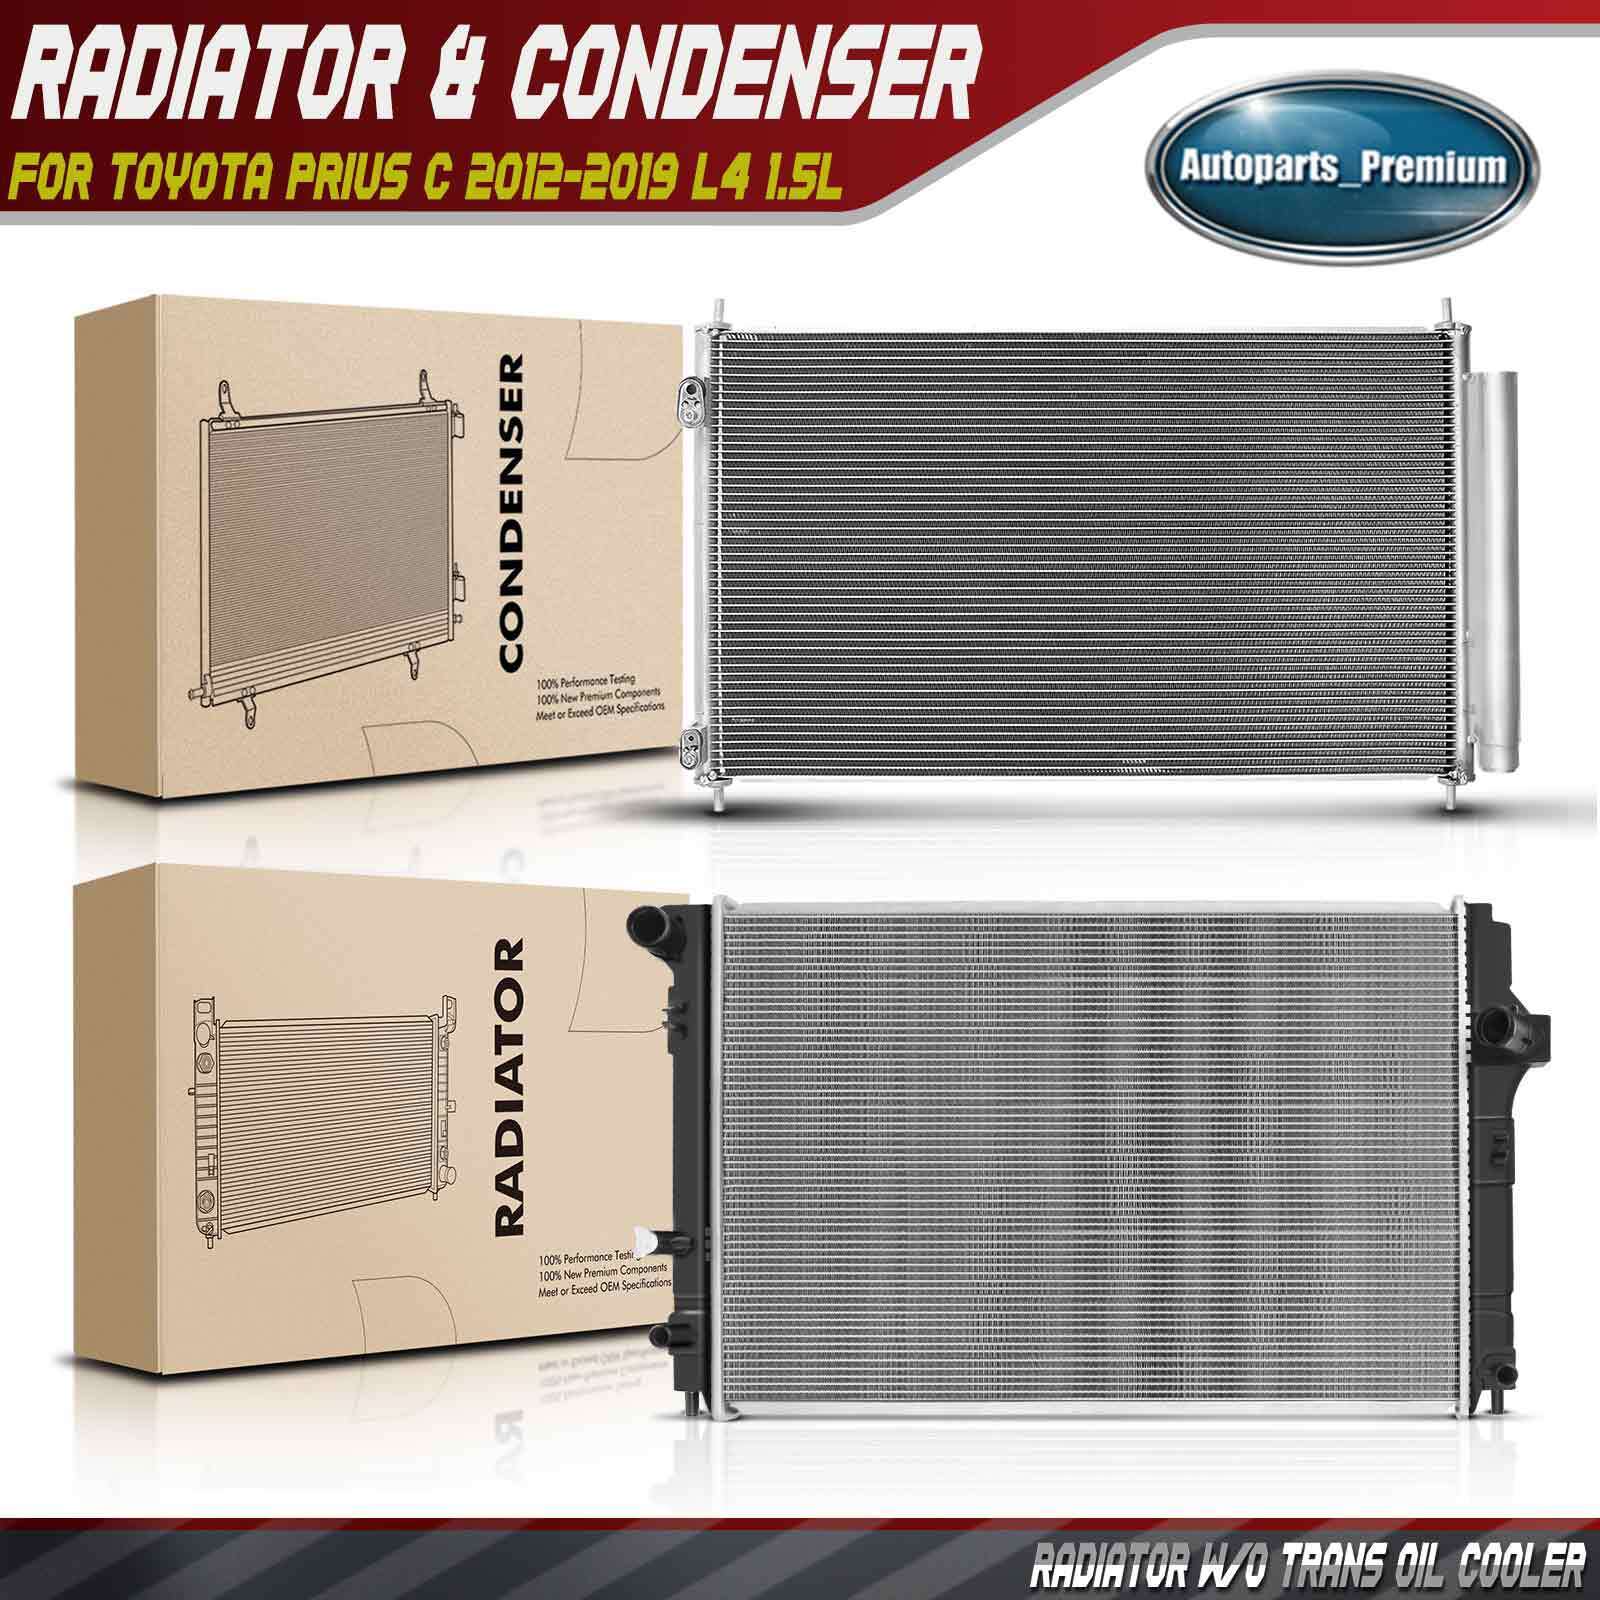 2Pcs Aluminum Radiator & AC Condenser Cooling Kit for Toyota Prius C 2012-2019